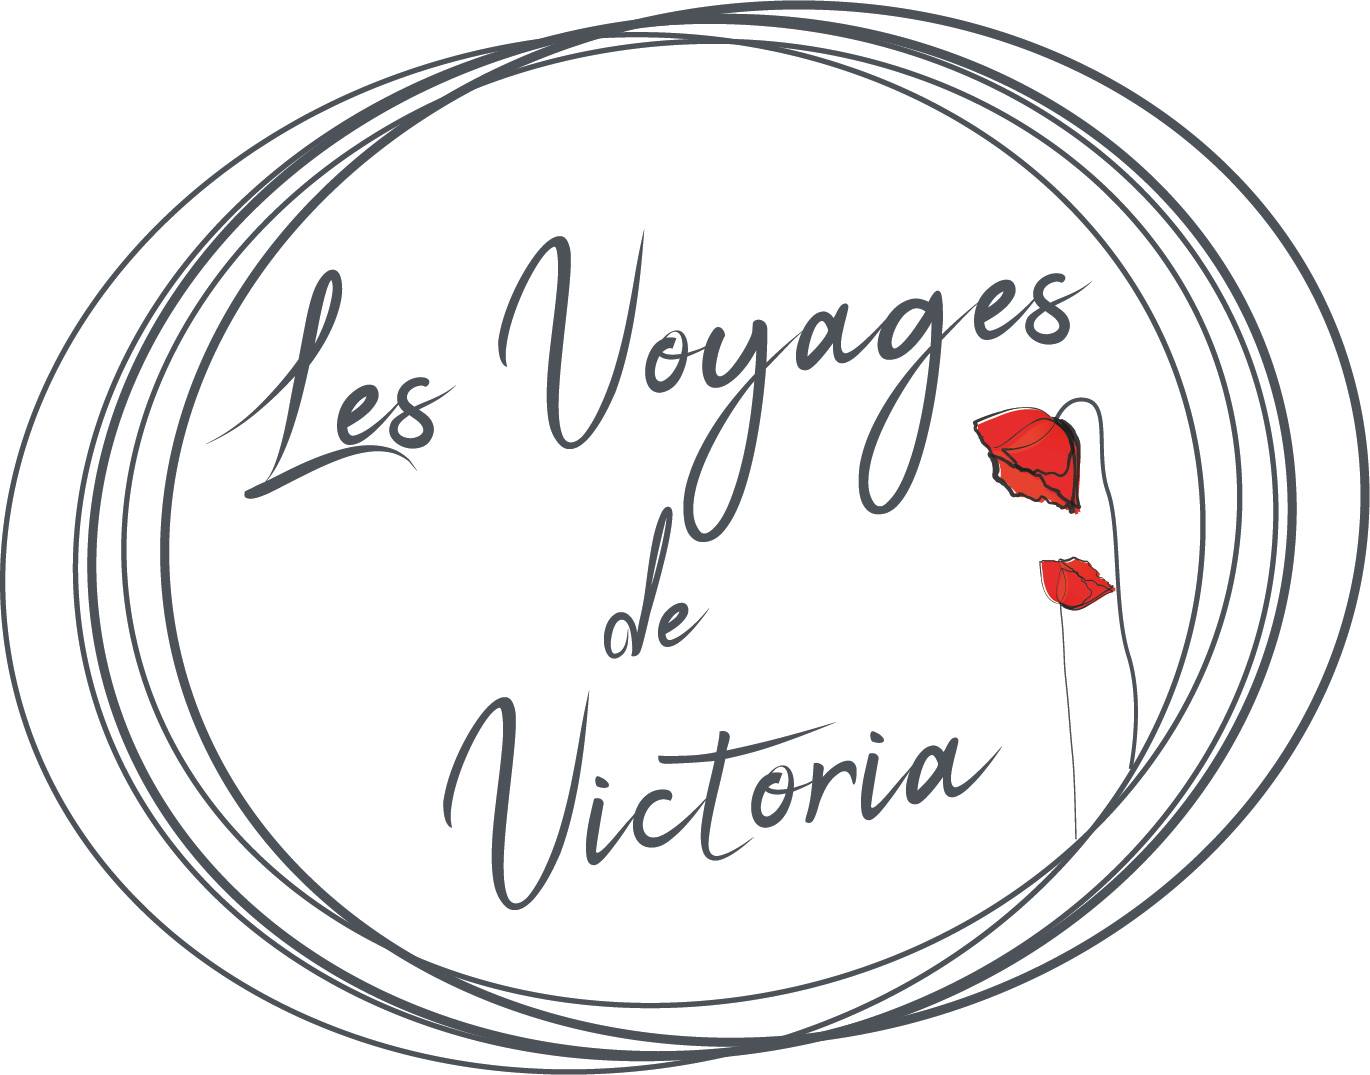 Les Voyages de Victoria